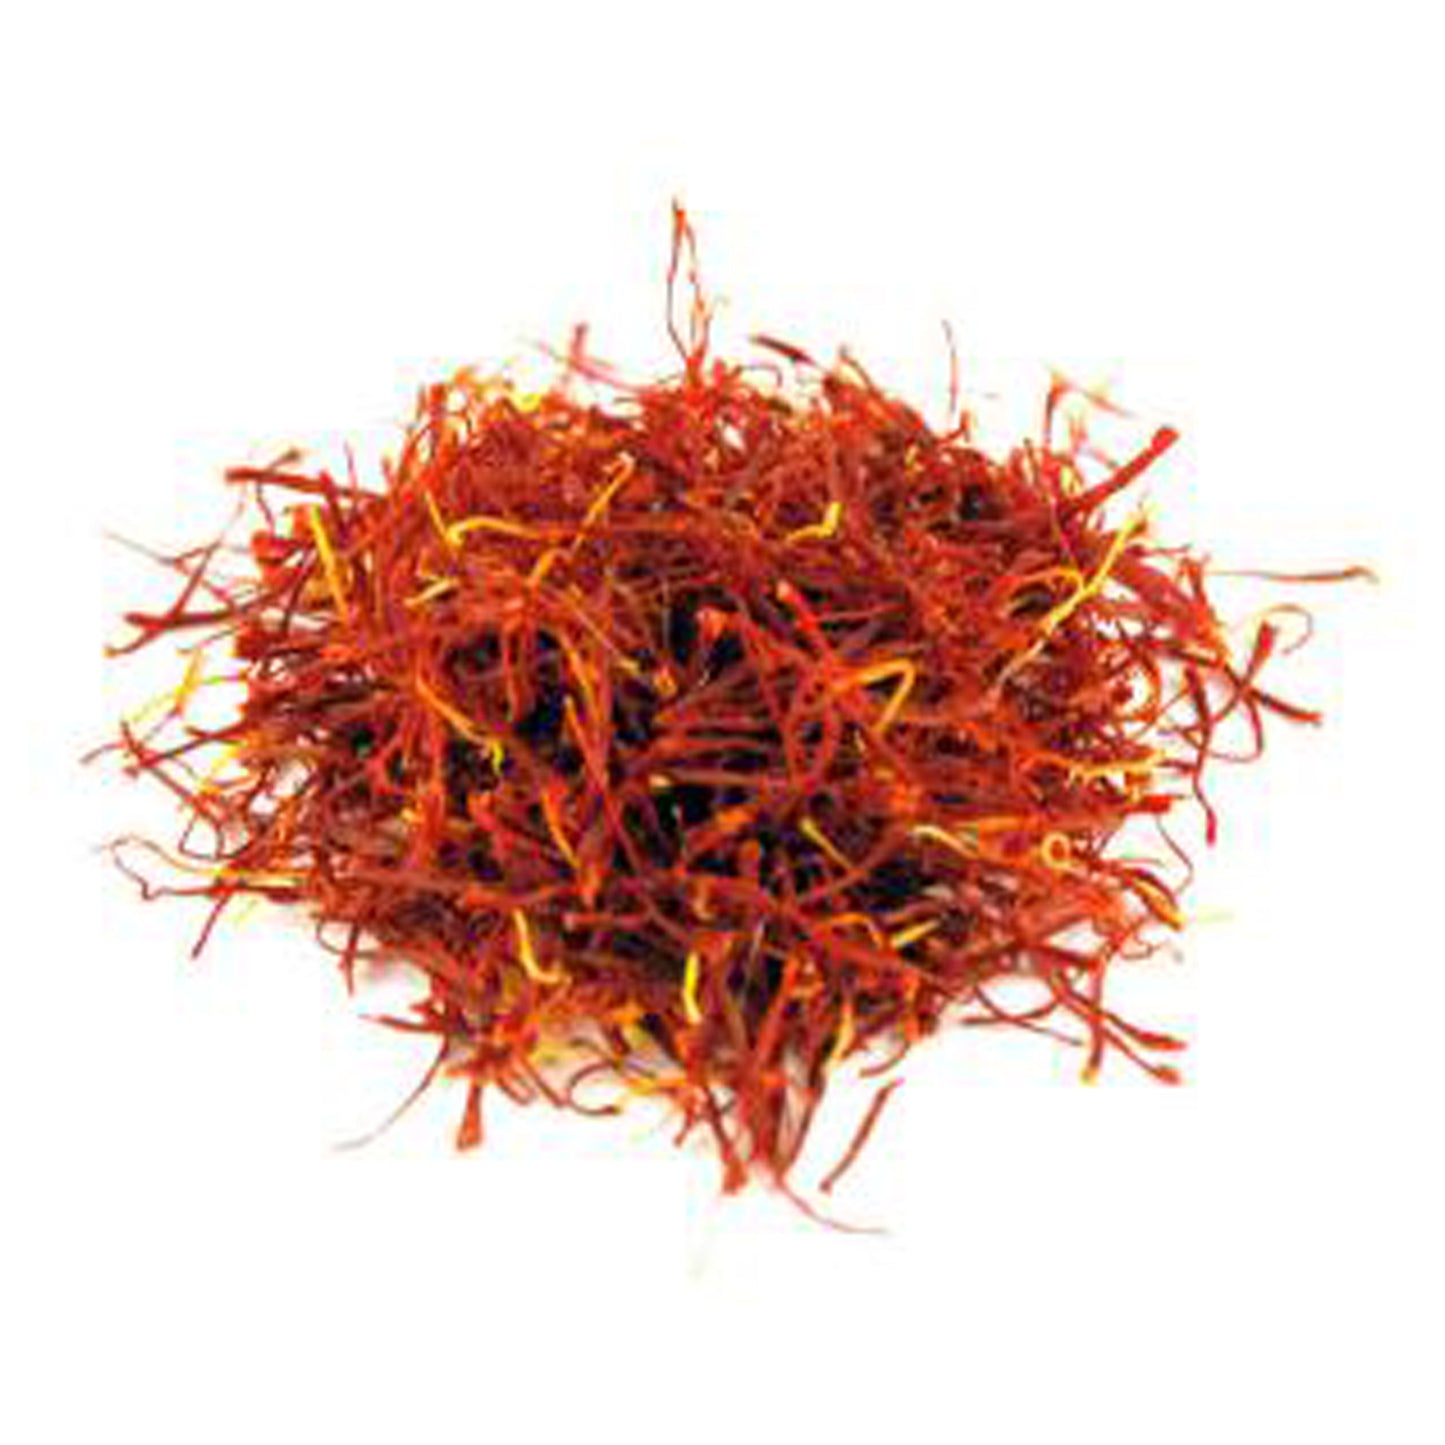 Saffron Threads